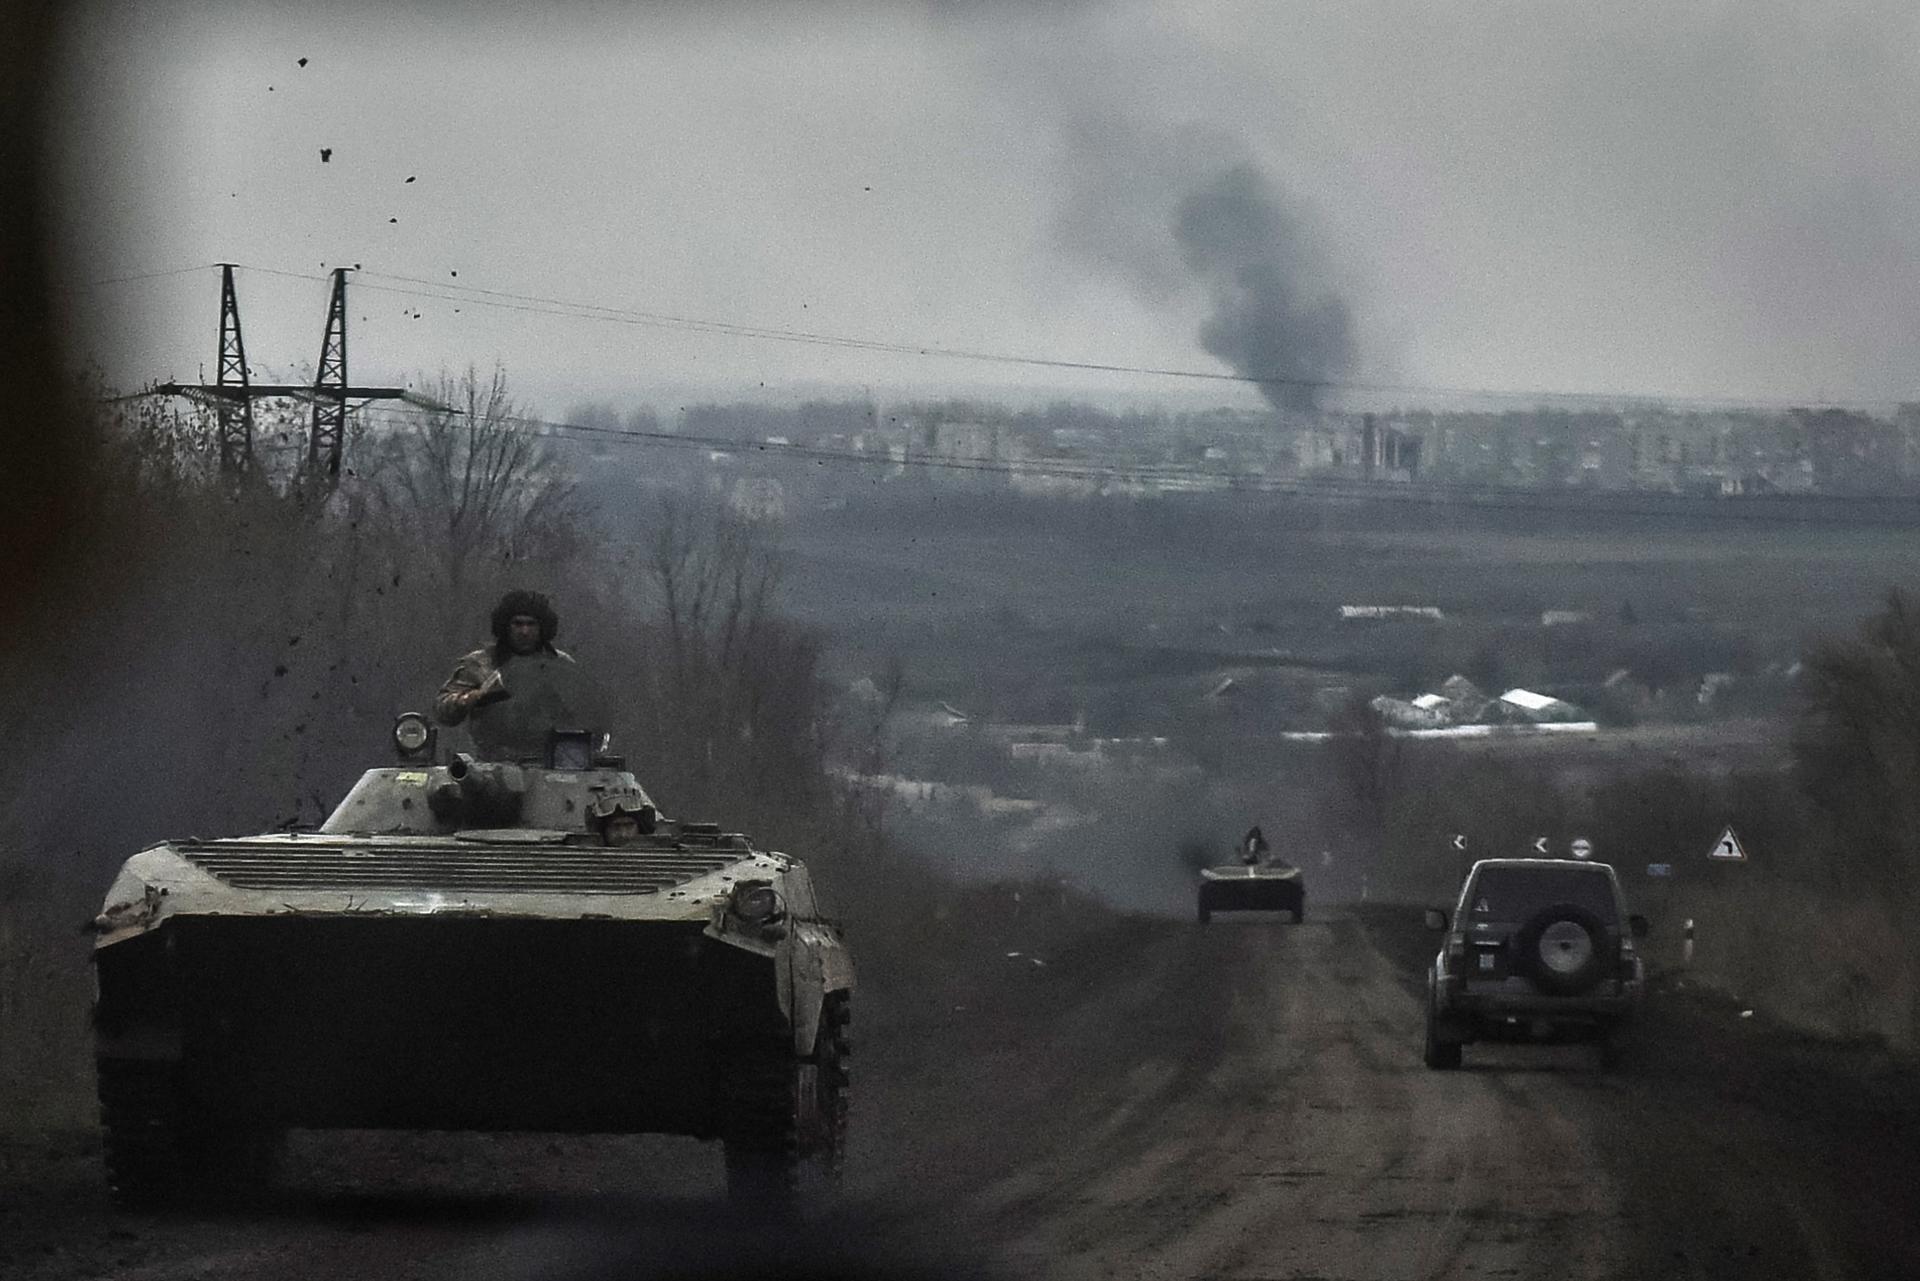 . (Rusia, Ucrania) EFE/EPA/OLEG PETRASYUK
Transportes blindados ucranianos en la región de Donetsks. (Rusia, Ucrania) EFE/EPA/OLEG PETRASYUK